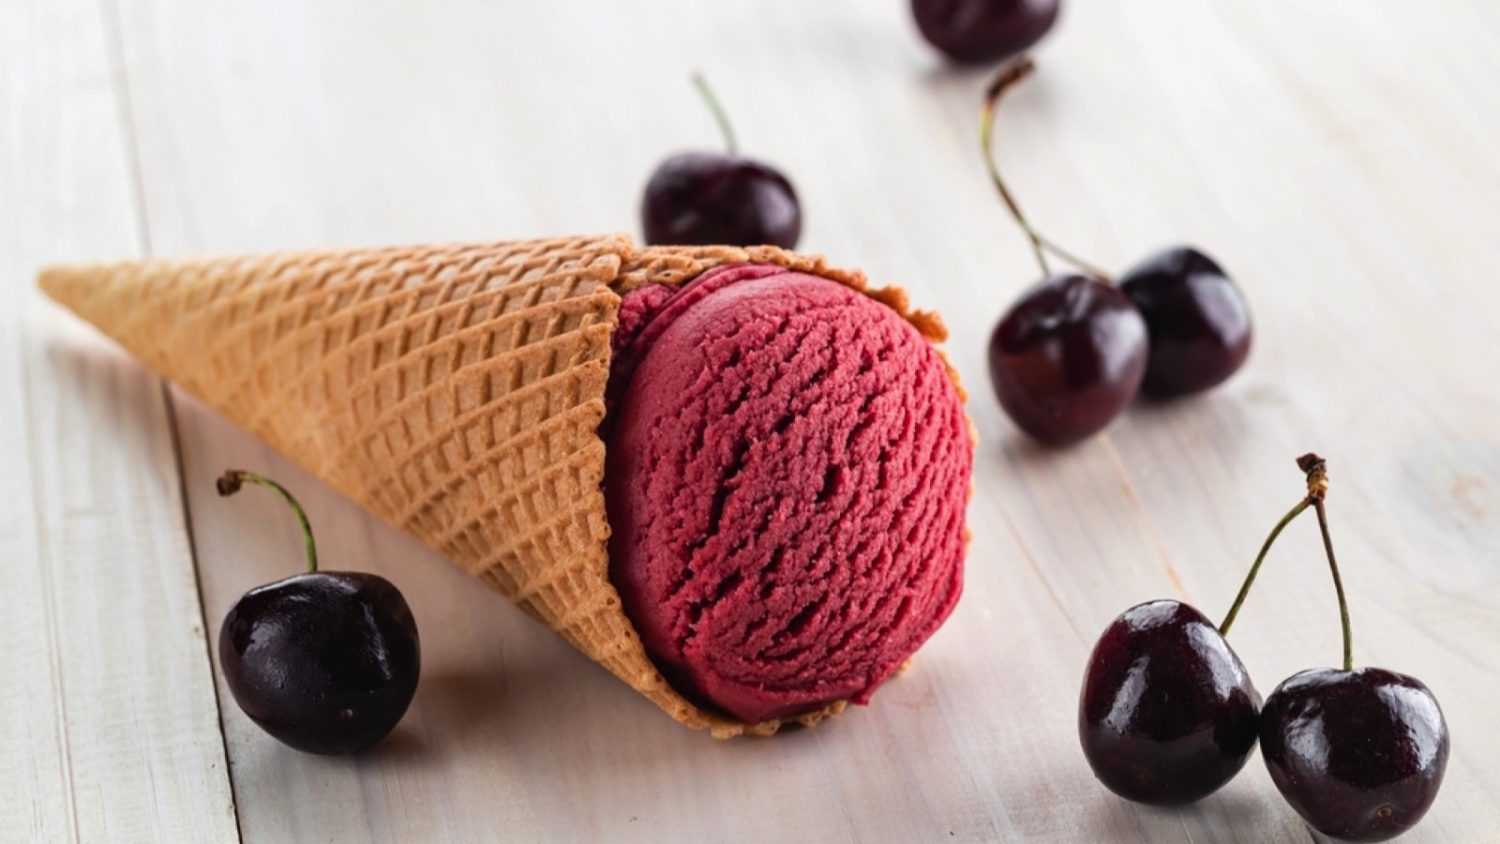 Cherry cone ice cream